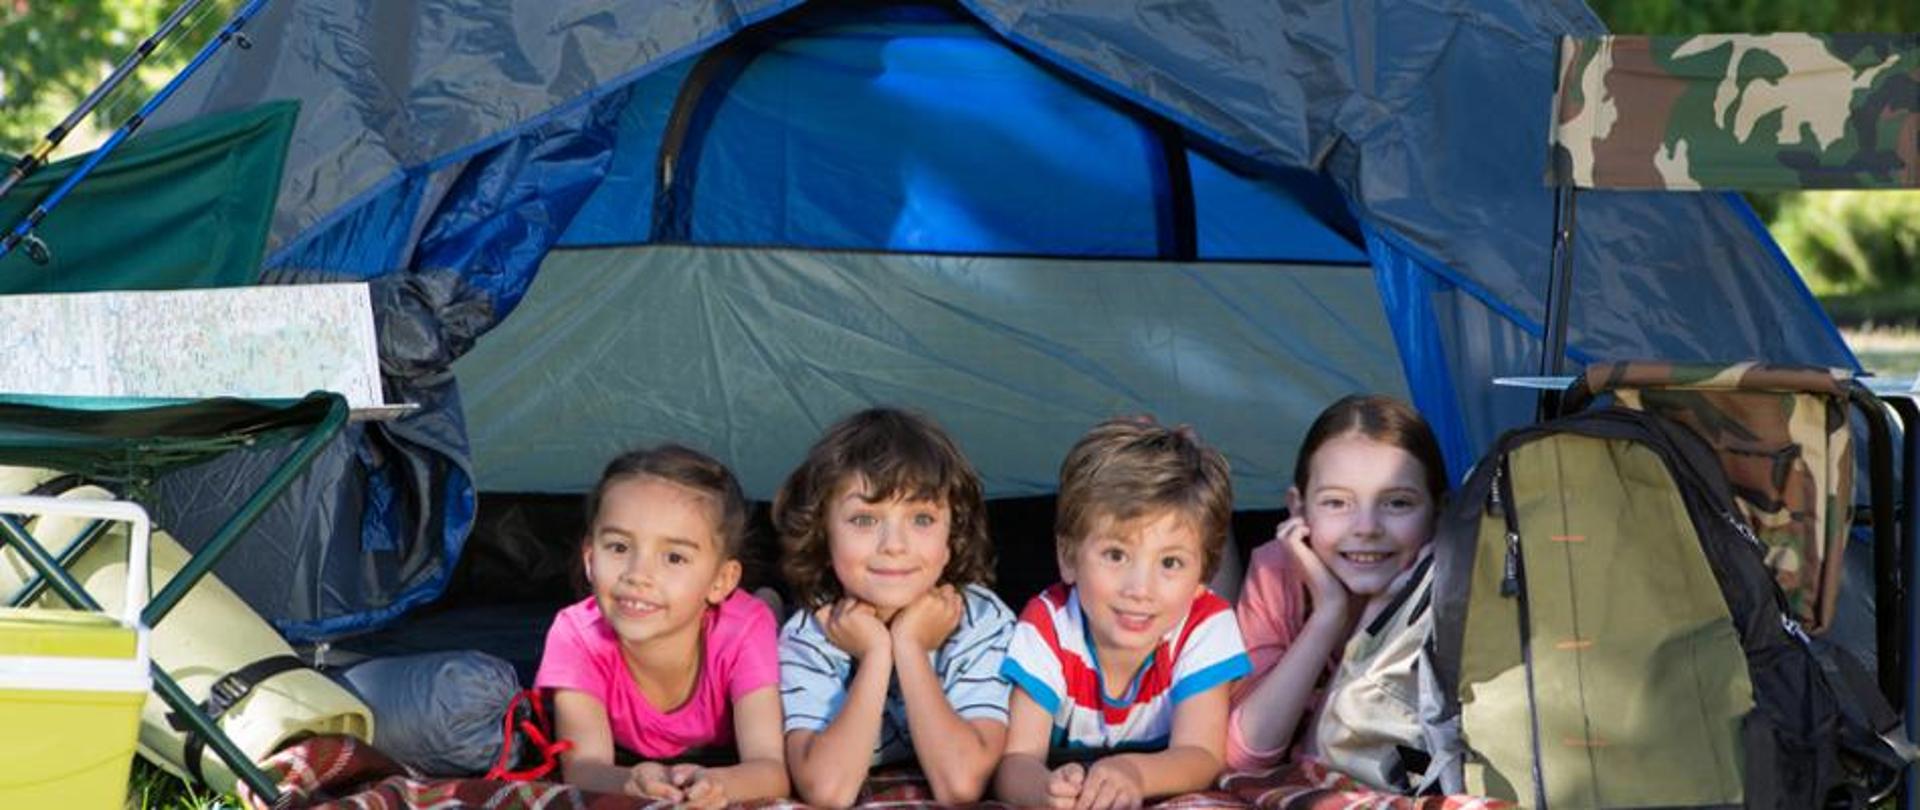 Na zdjęciu znajduje się czwórka uśmiechniętych dzieci leżących w namiocie, po obu bokach namiotu znajdują się akcesoria obozowe: plecak, karimata, śpiwór, składane krzesło 